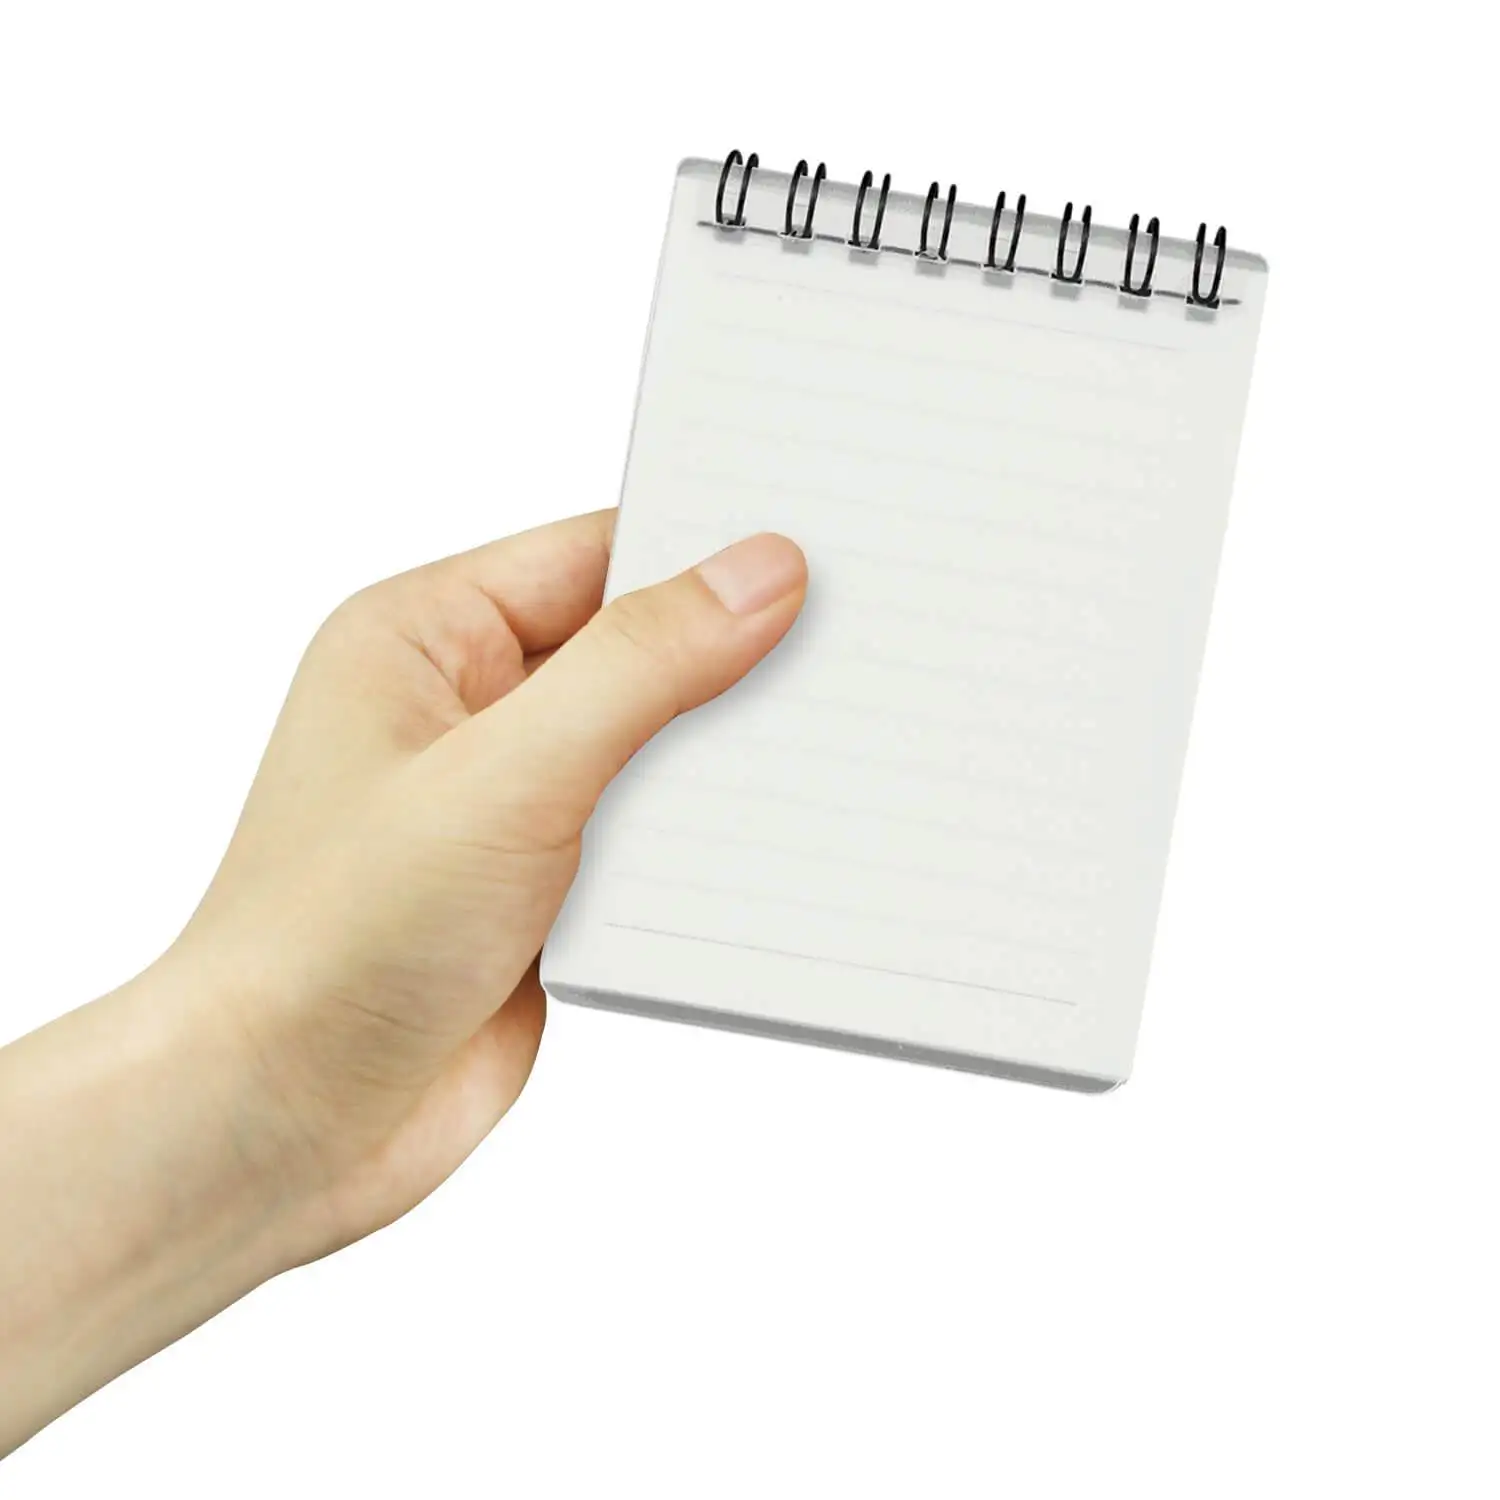  RUBAPOSM Cuaderno digital inteligente reutilizable, bloc de  notas ecológico borrable con 1 bolígrafo borrable y 1 paño de microfibra y  pestañas coloridas, páginas en blanco con forro A5, diario en espiral